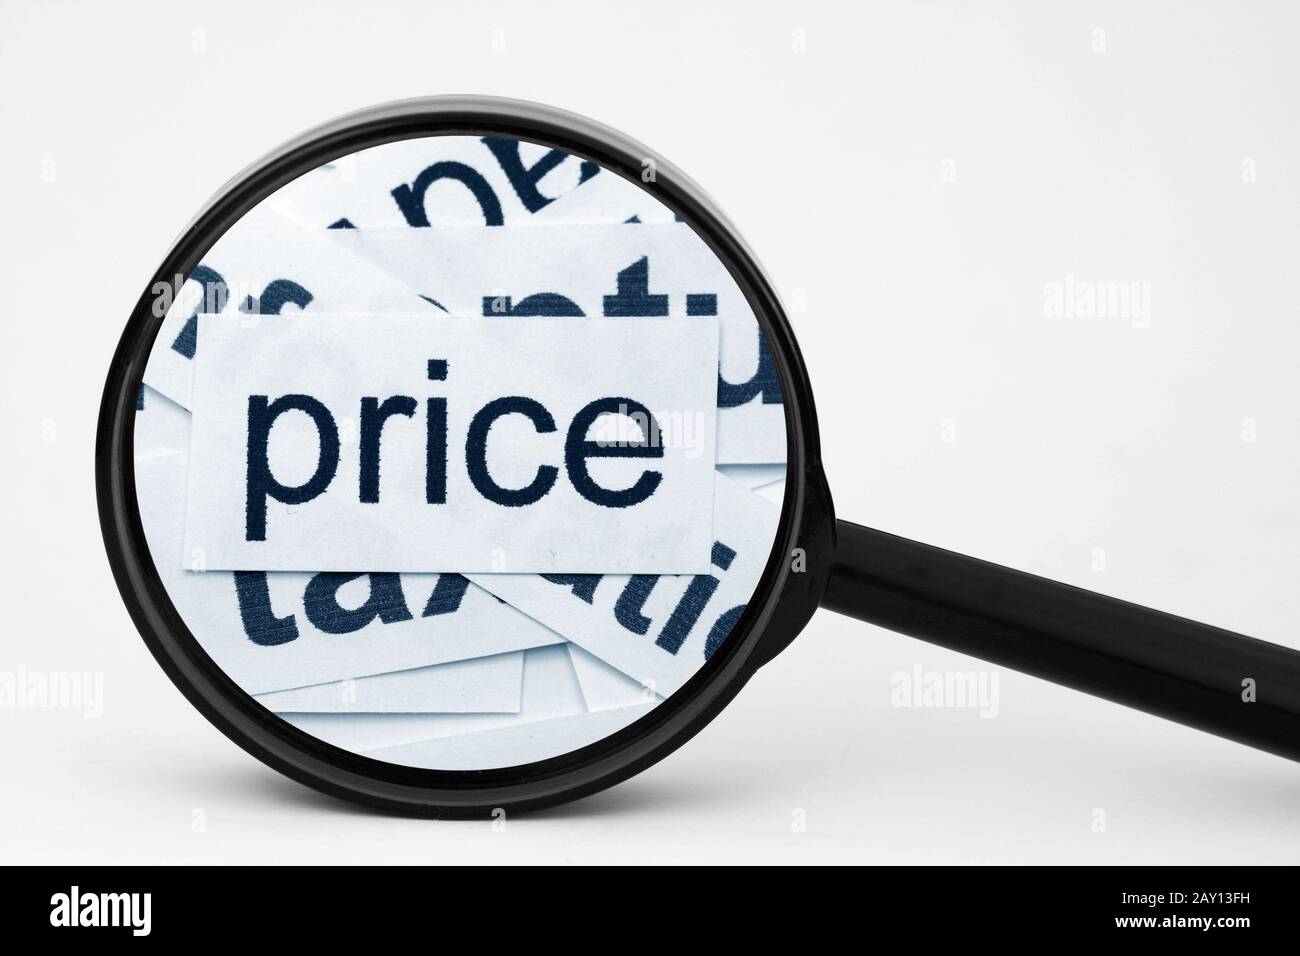 Price Stock Photo